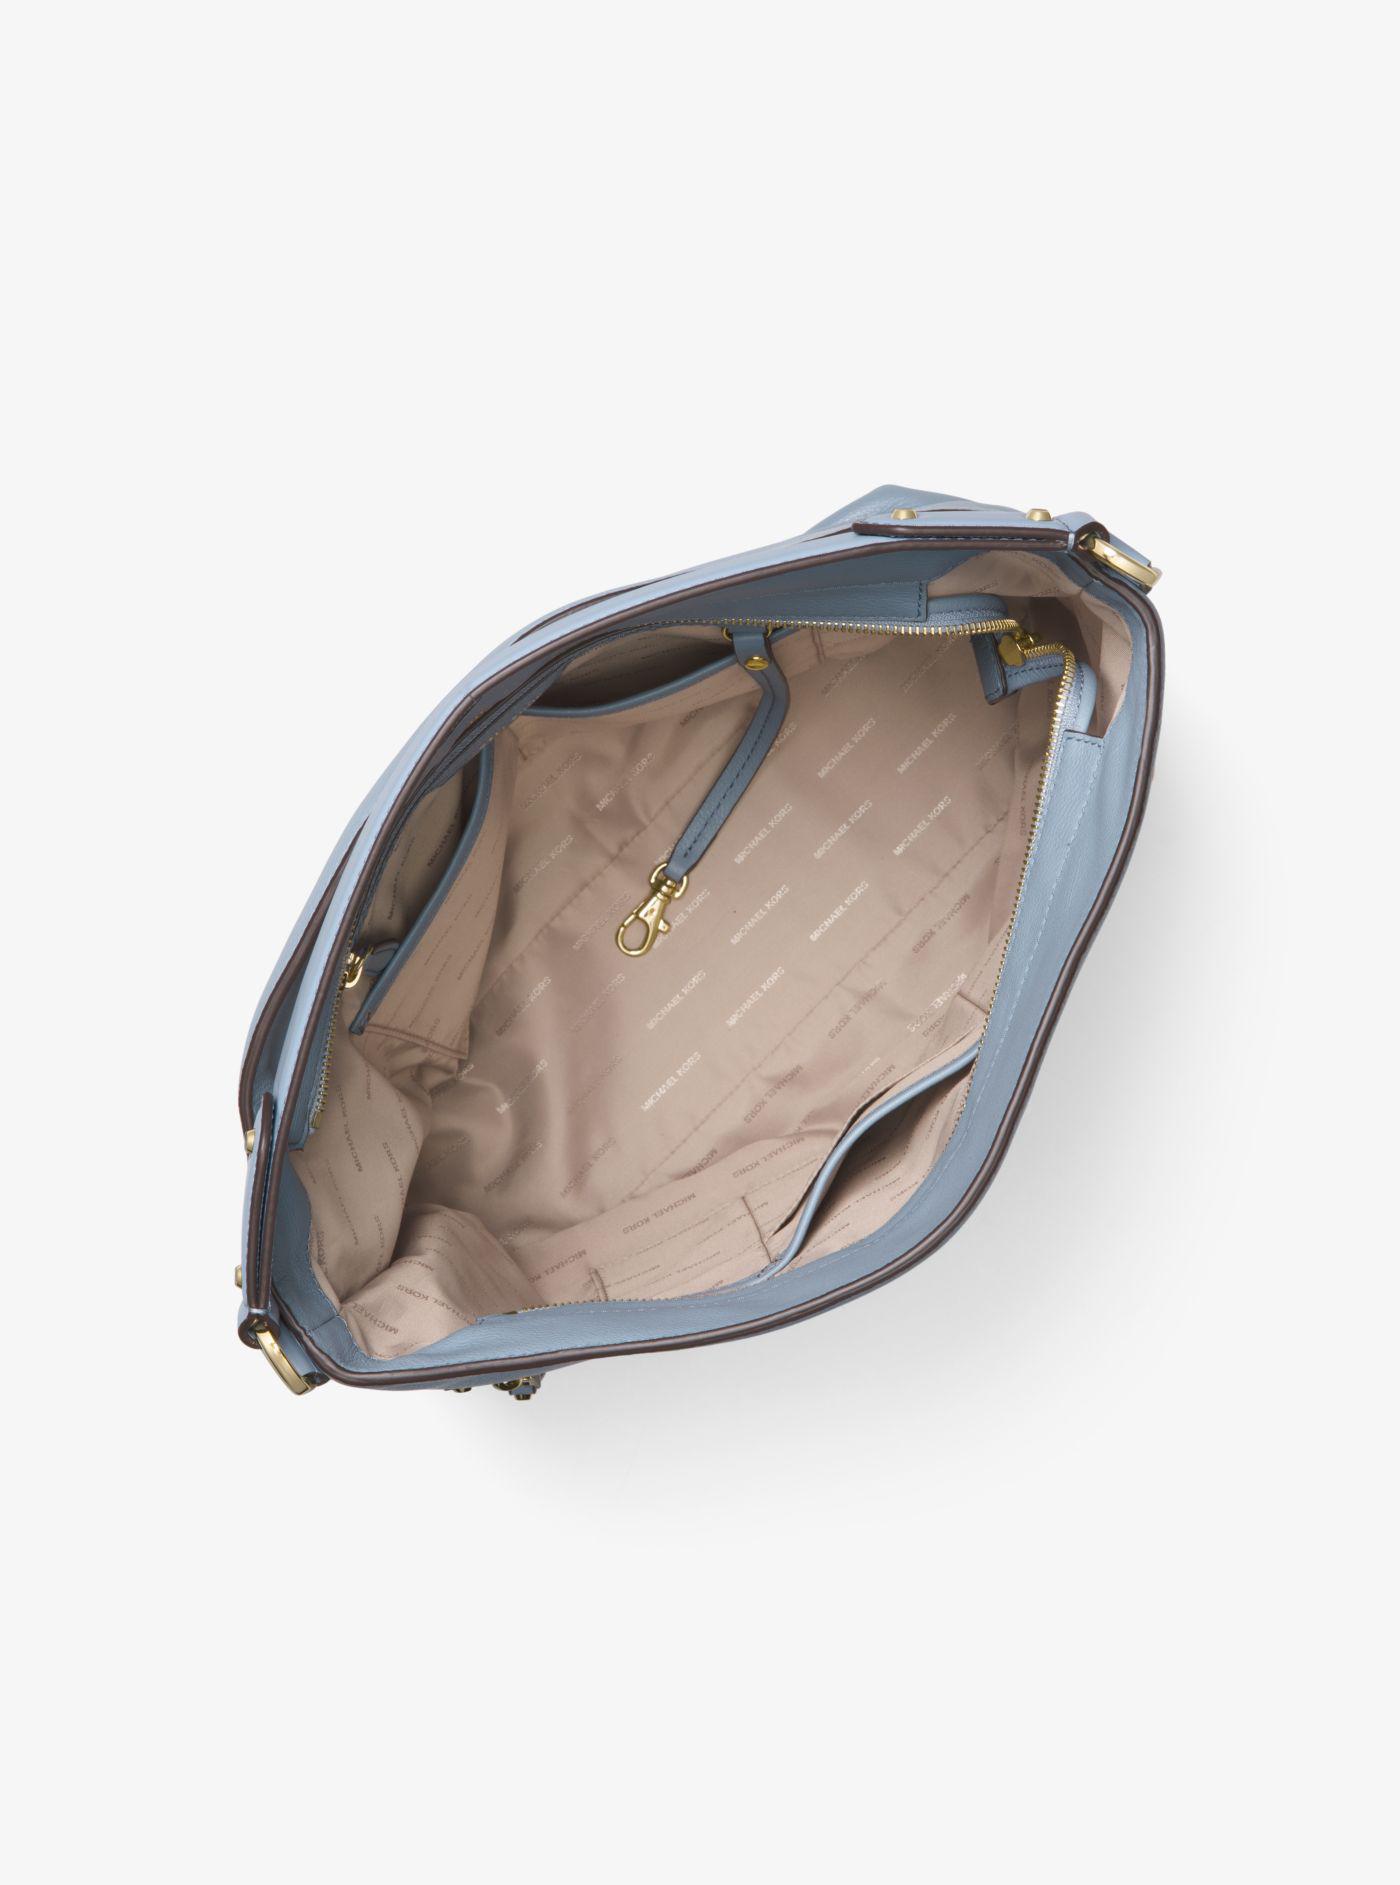 Michael Kors Evie Large Pebbled Leather Shoulder Bag in Pale Blue (Blue) -  Lyst